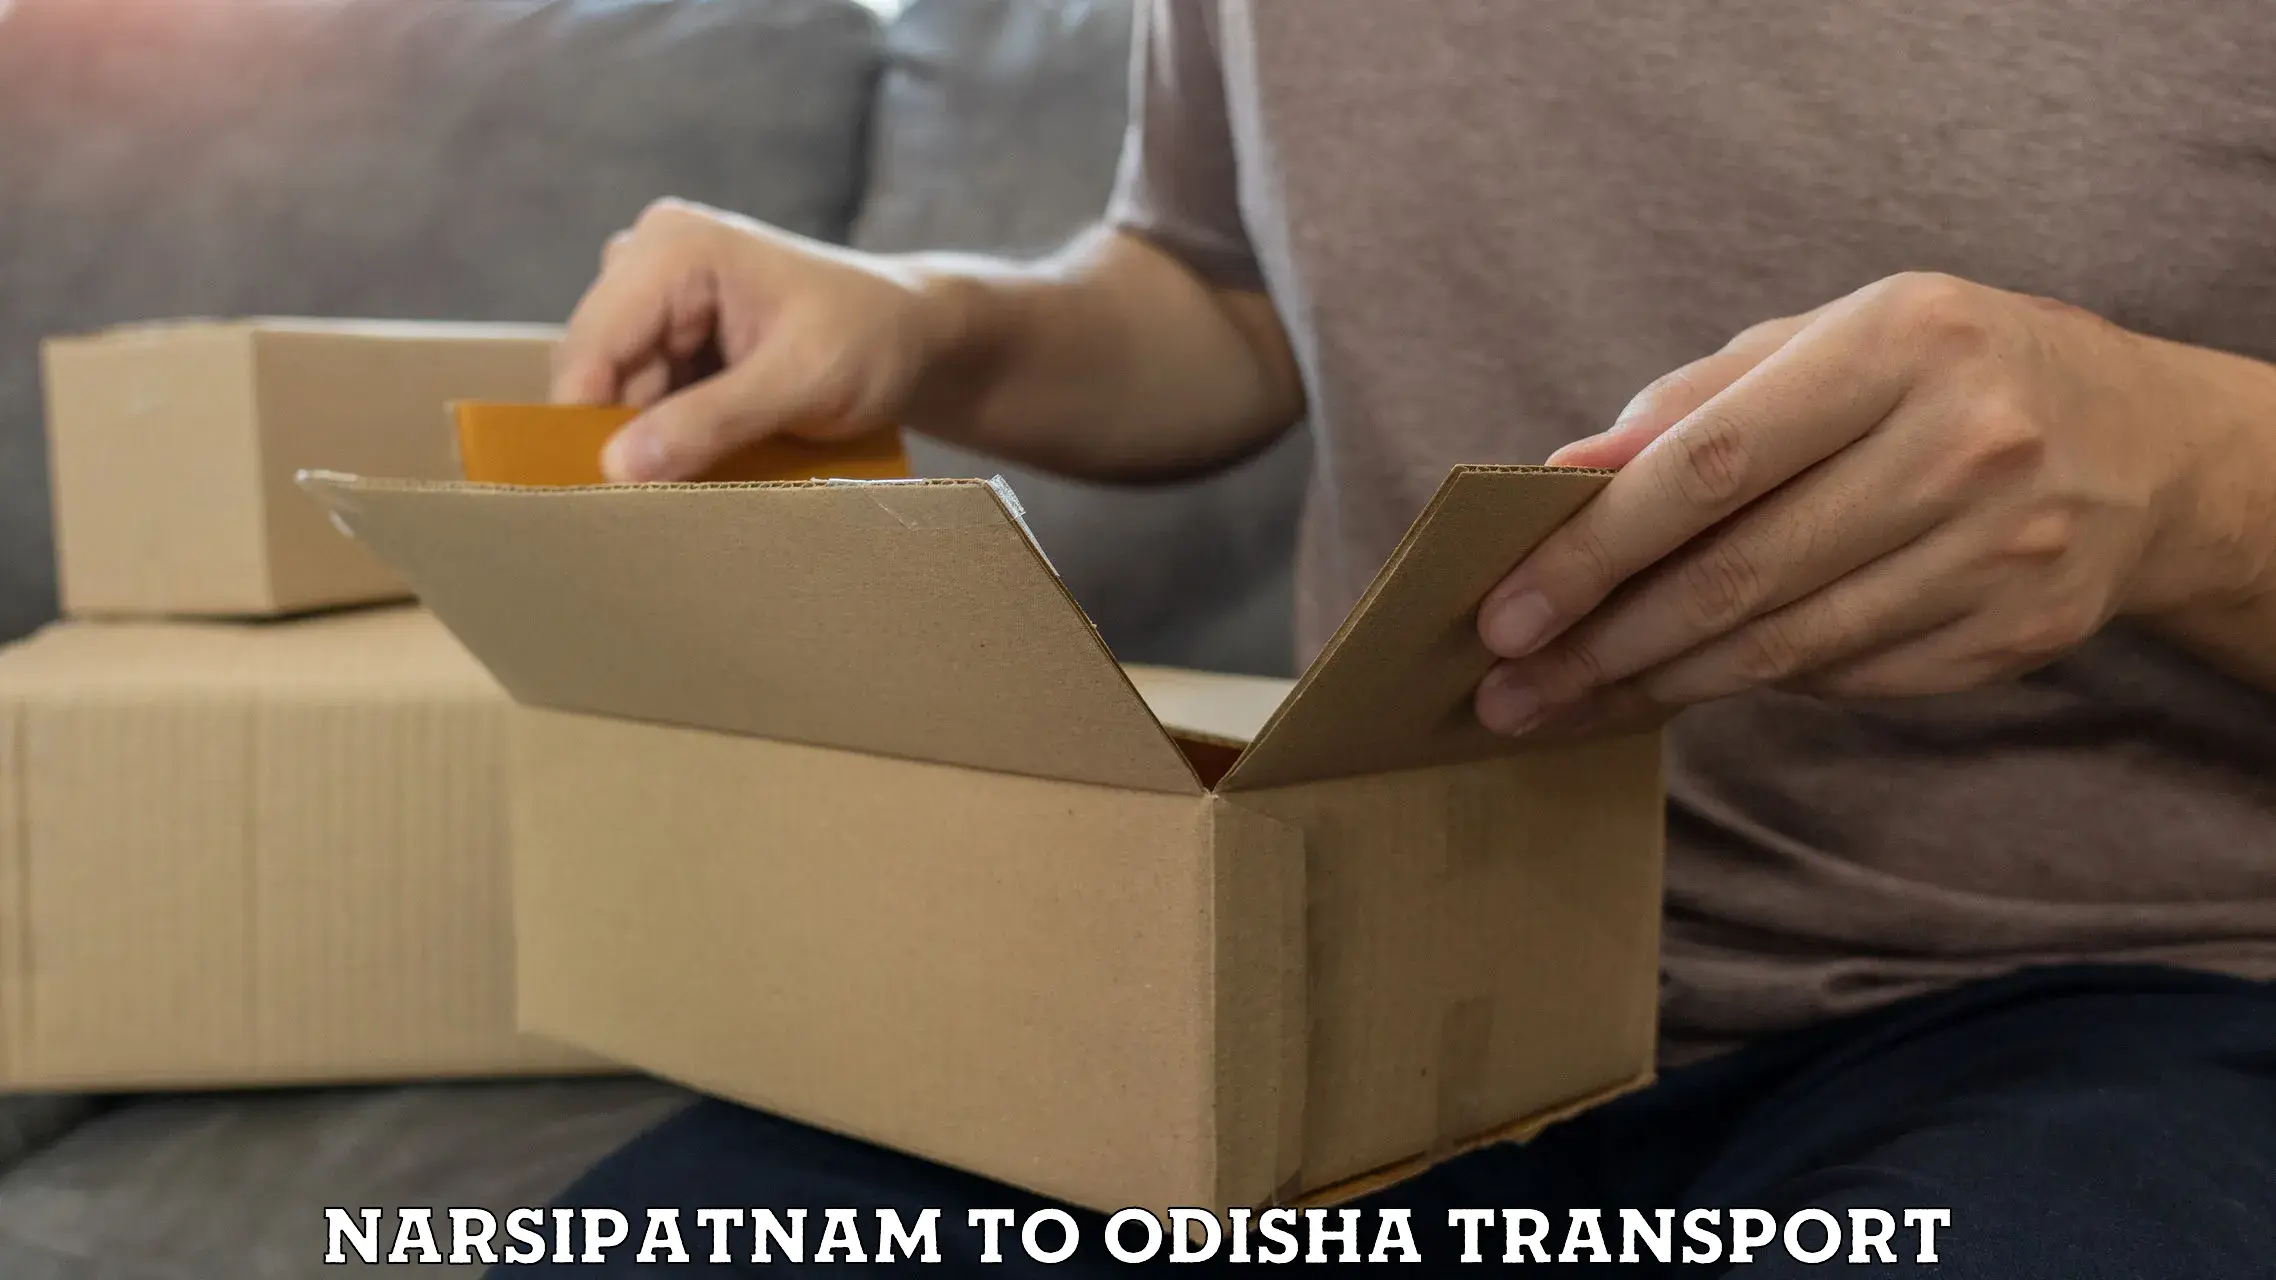 Furniture transport service Narsipatnam to Asika